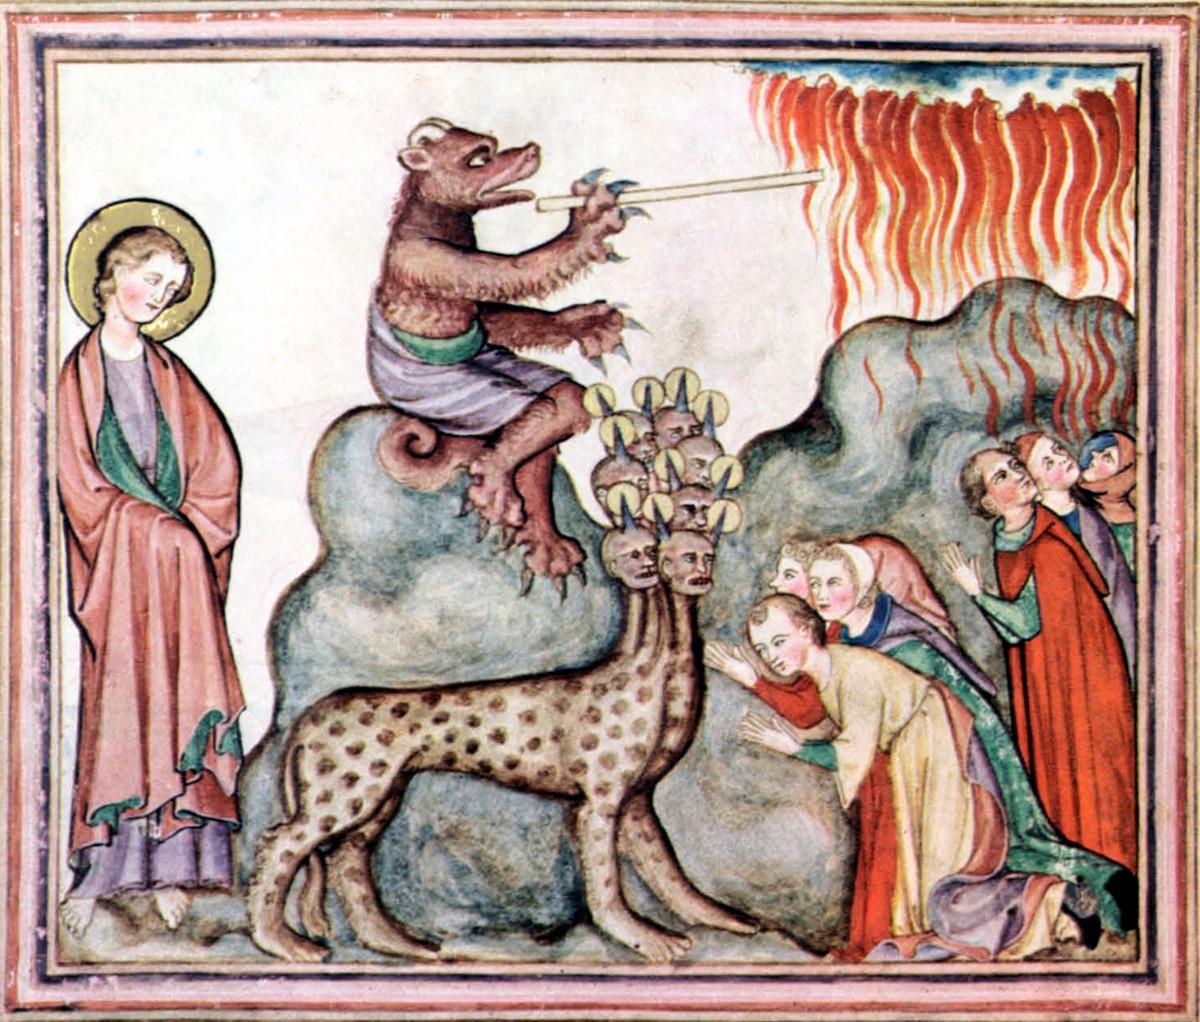 Johanneksen ilmestys on innostanut myös taiteilijoita tekemään tulkintoja kirjan vahvasta symboliikasta. Kuvan maalaus on vuodelta 1330. 